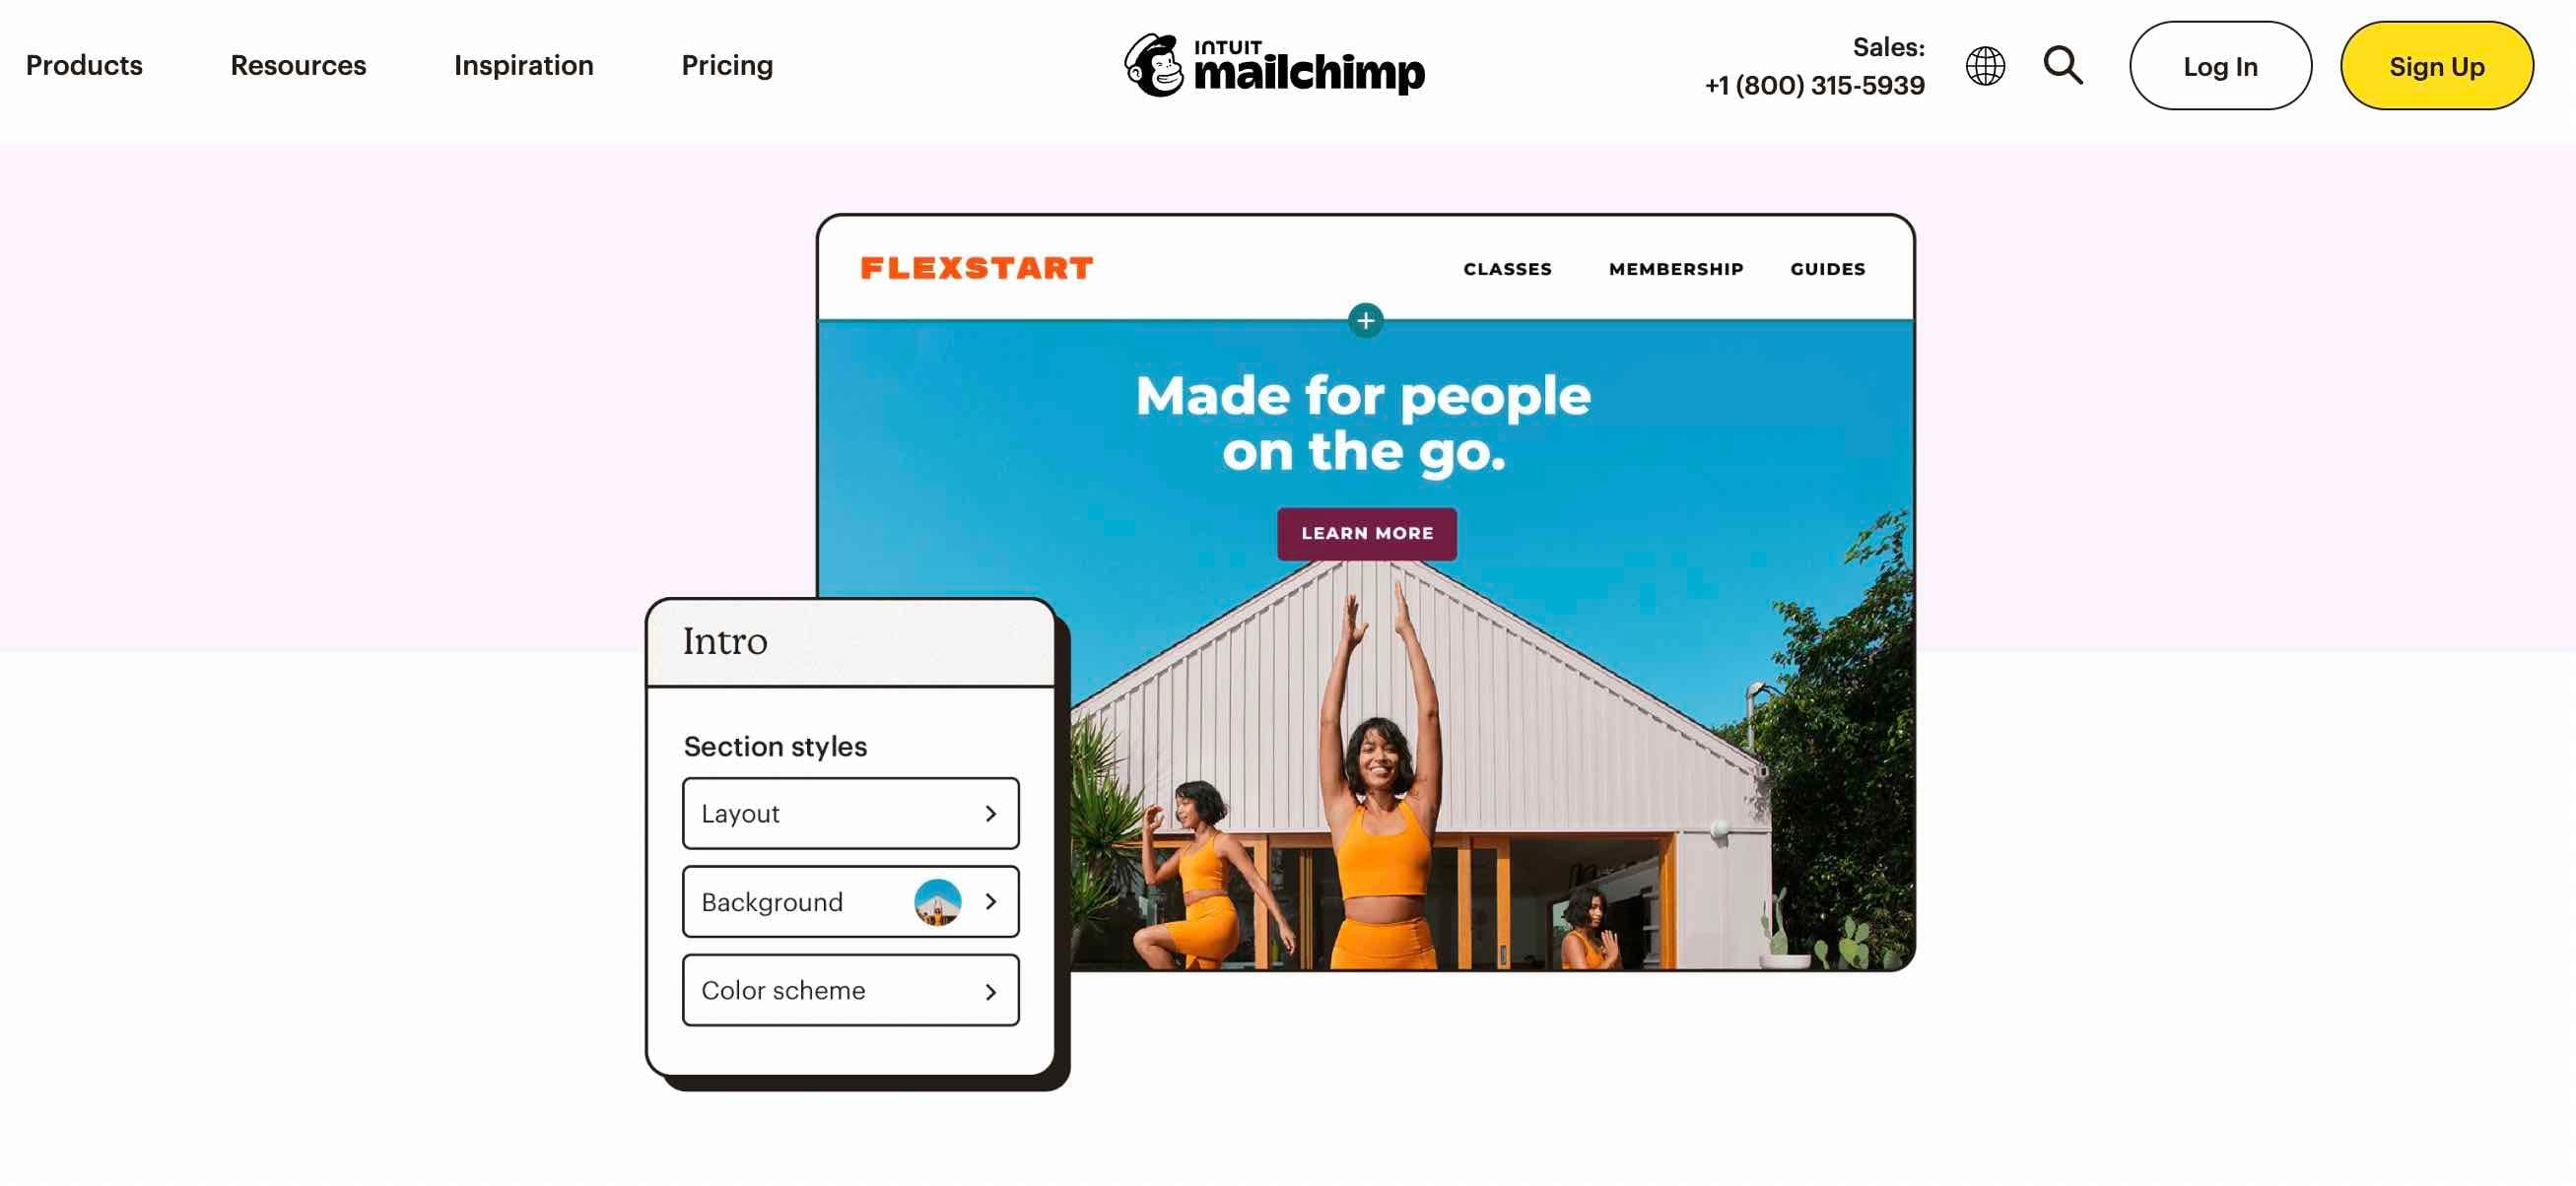 Ücretsiz web sitesi oluşturucu MailChimp, ücretsiz temel web sitenizi oluşturmak da dahil olmak üzere pazarlamayla ilgili her şey için tek adresinizdir.